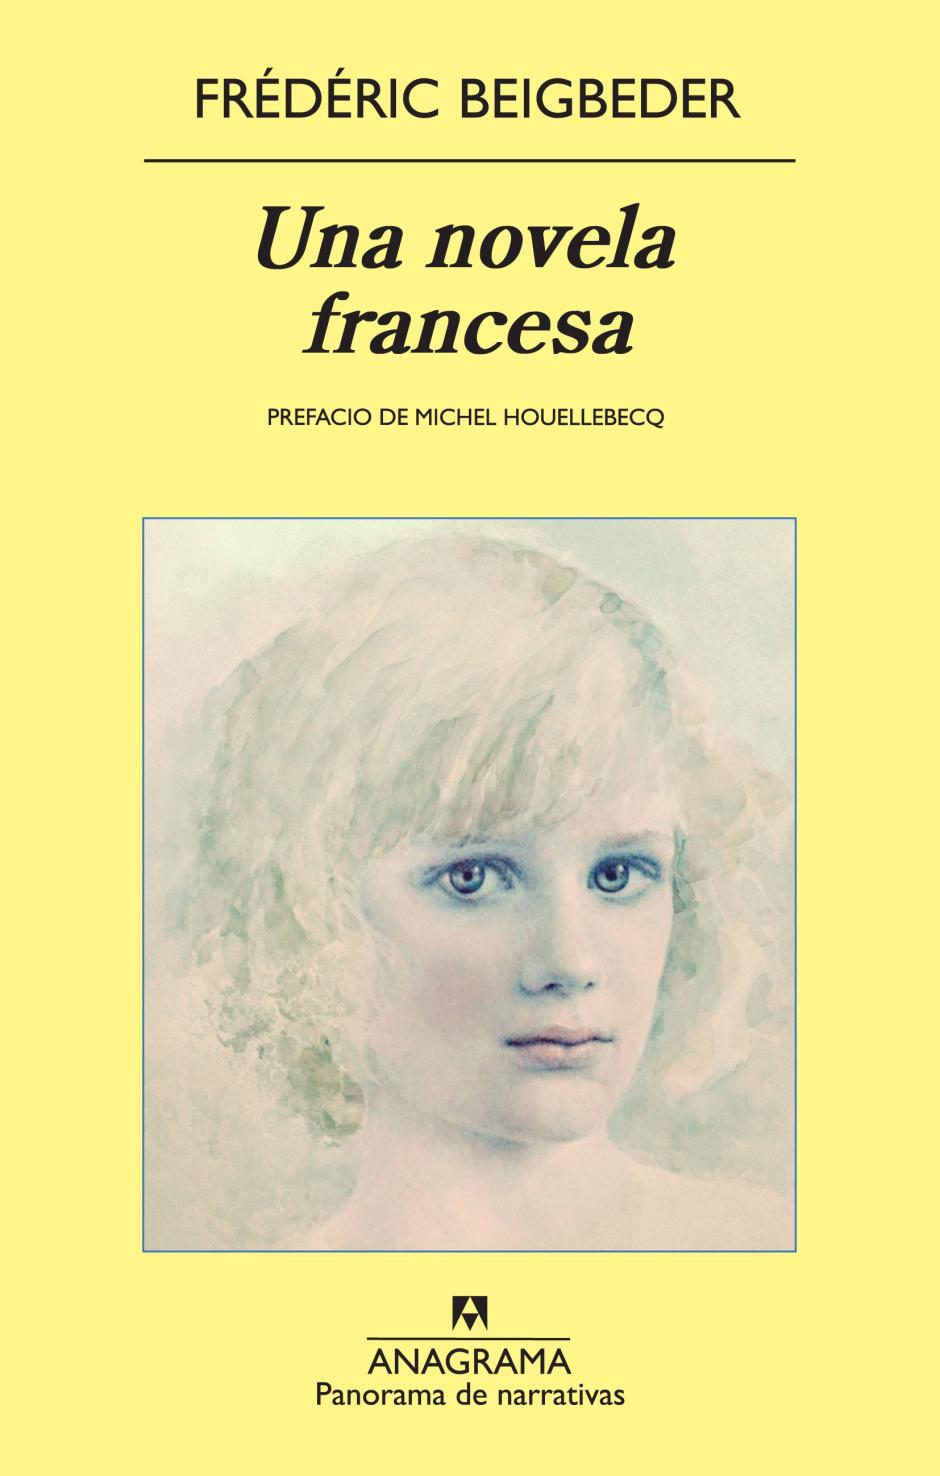 'Una novela francesa' es una de las obras más conocidas del escritor Frédéric Beigbeder